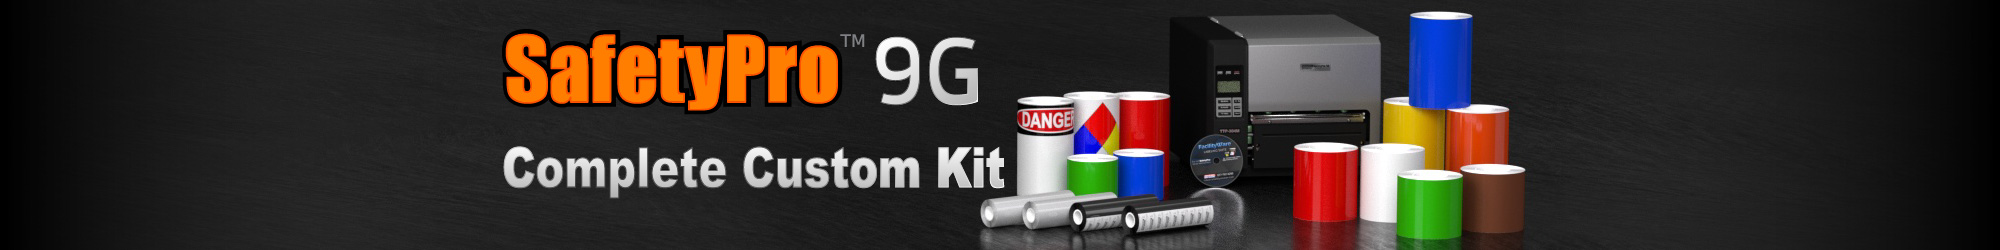 SafetyPro 9G Complete Custom Kit